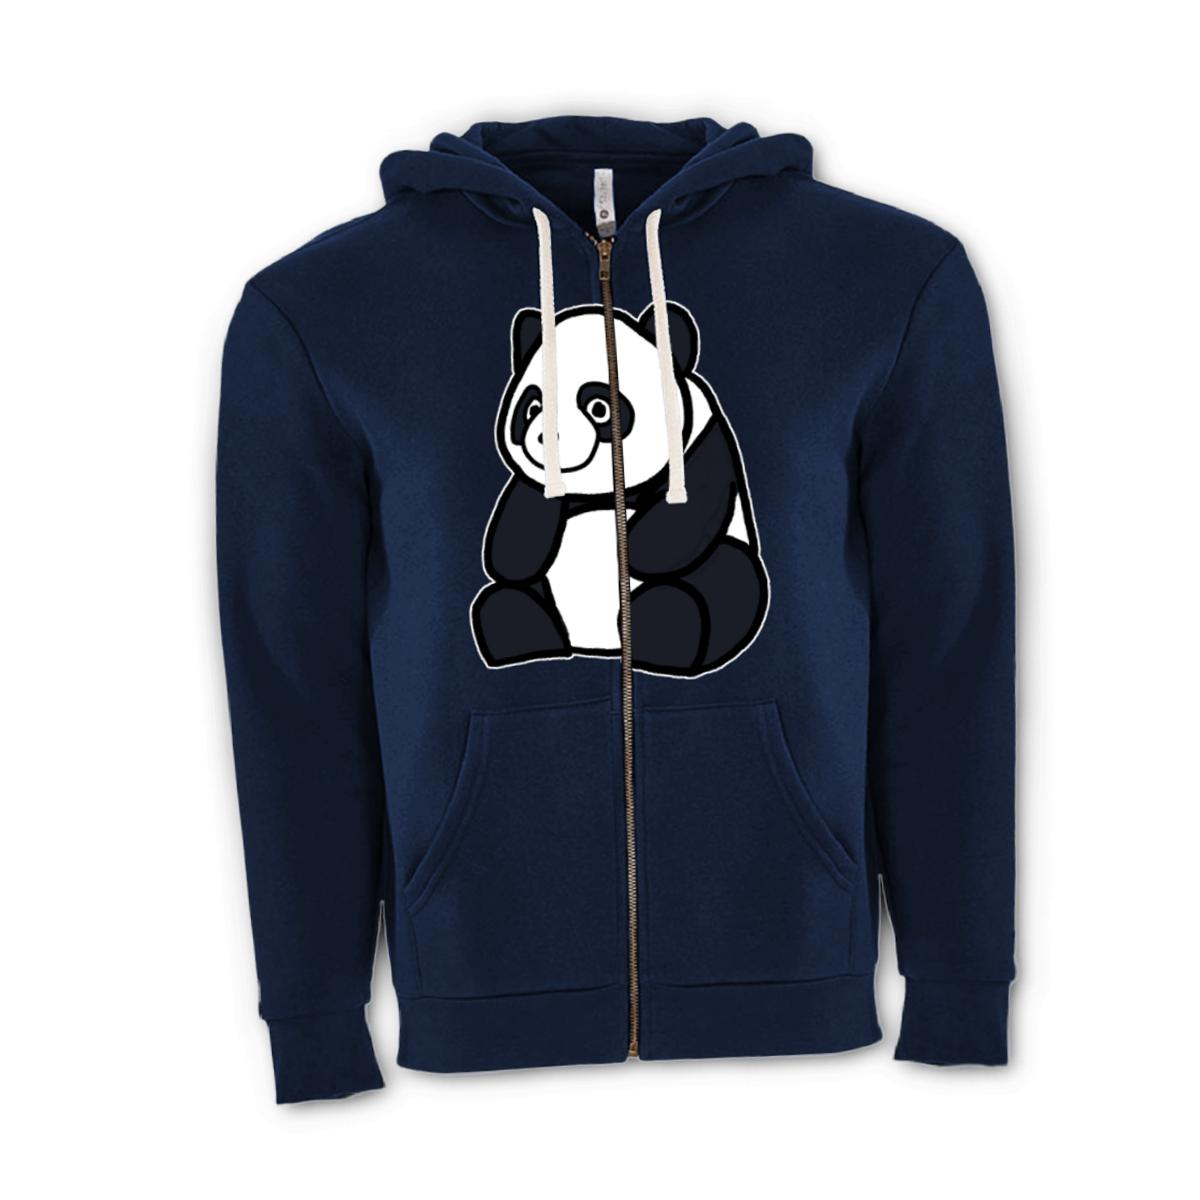 Panda Unisex Zip Hoodie Small midnight-navy